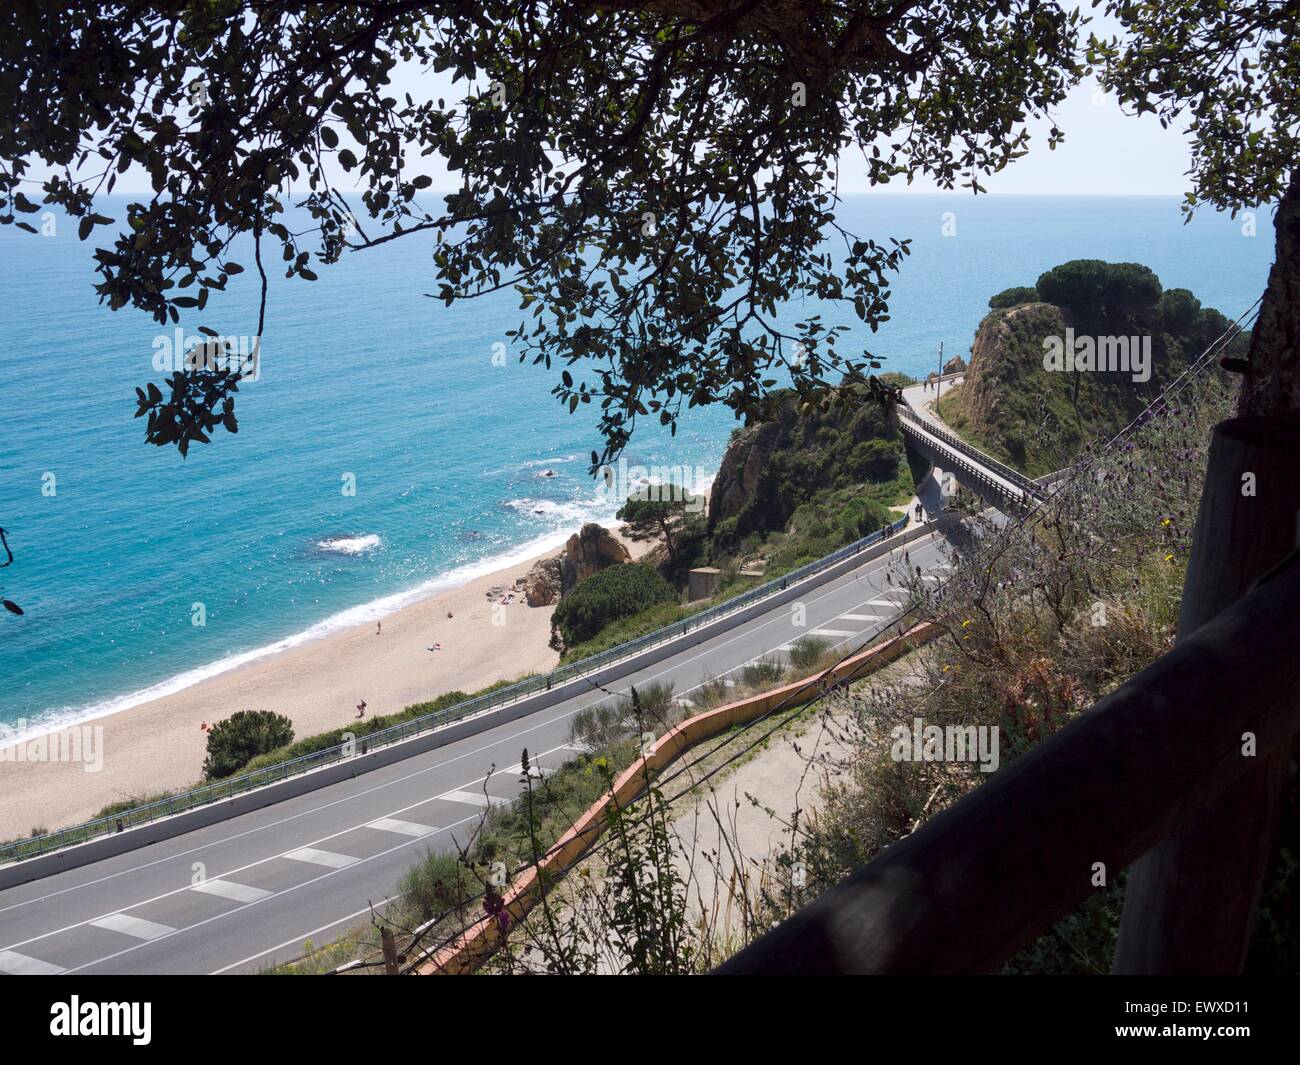 Strada che costeggia una spiaggia, ripresa dall'alto Foto Stock